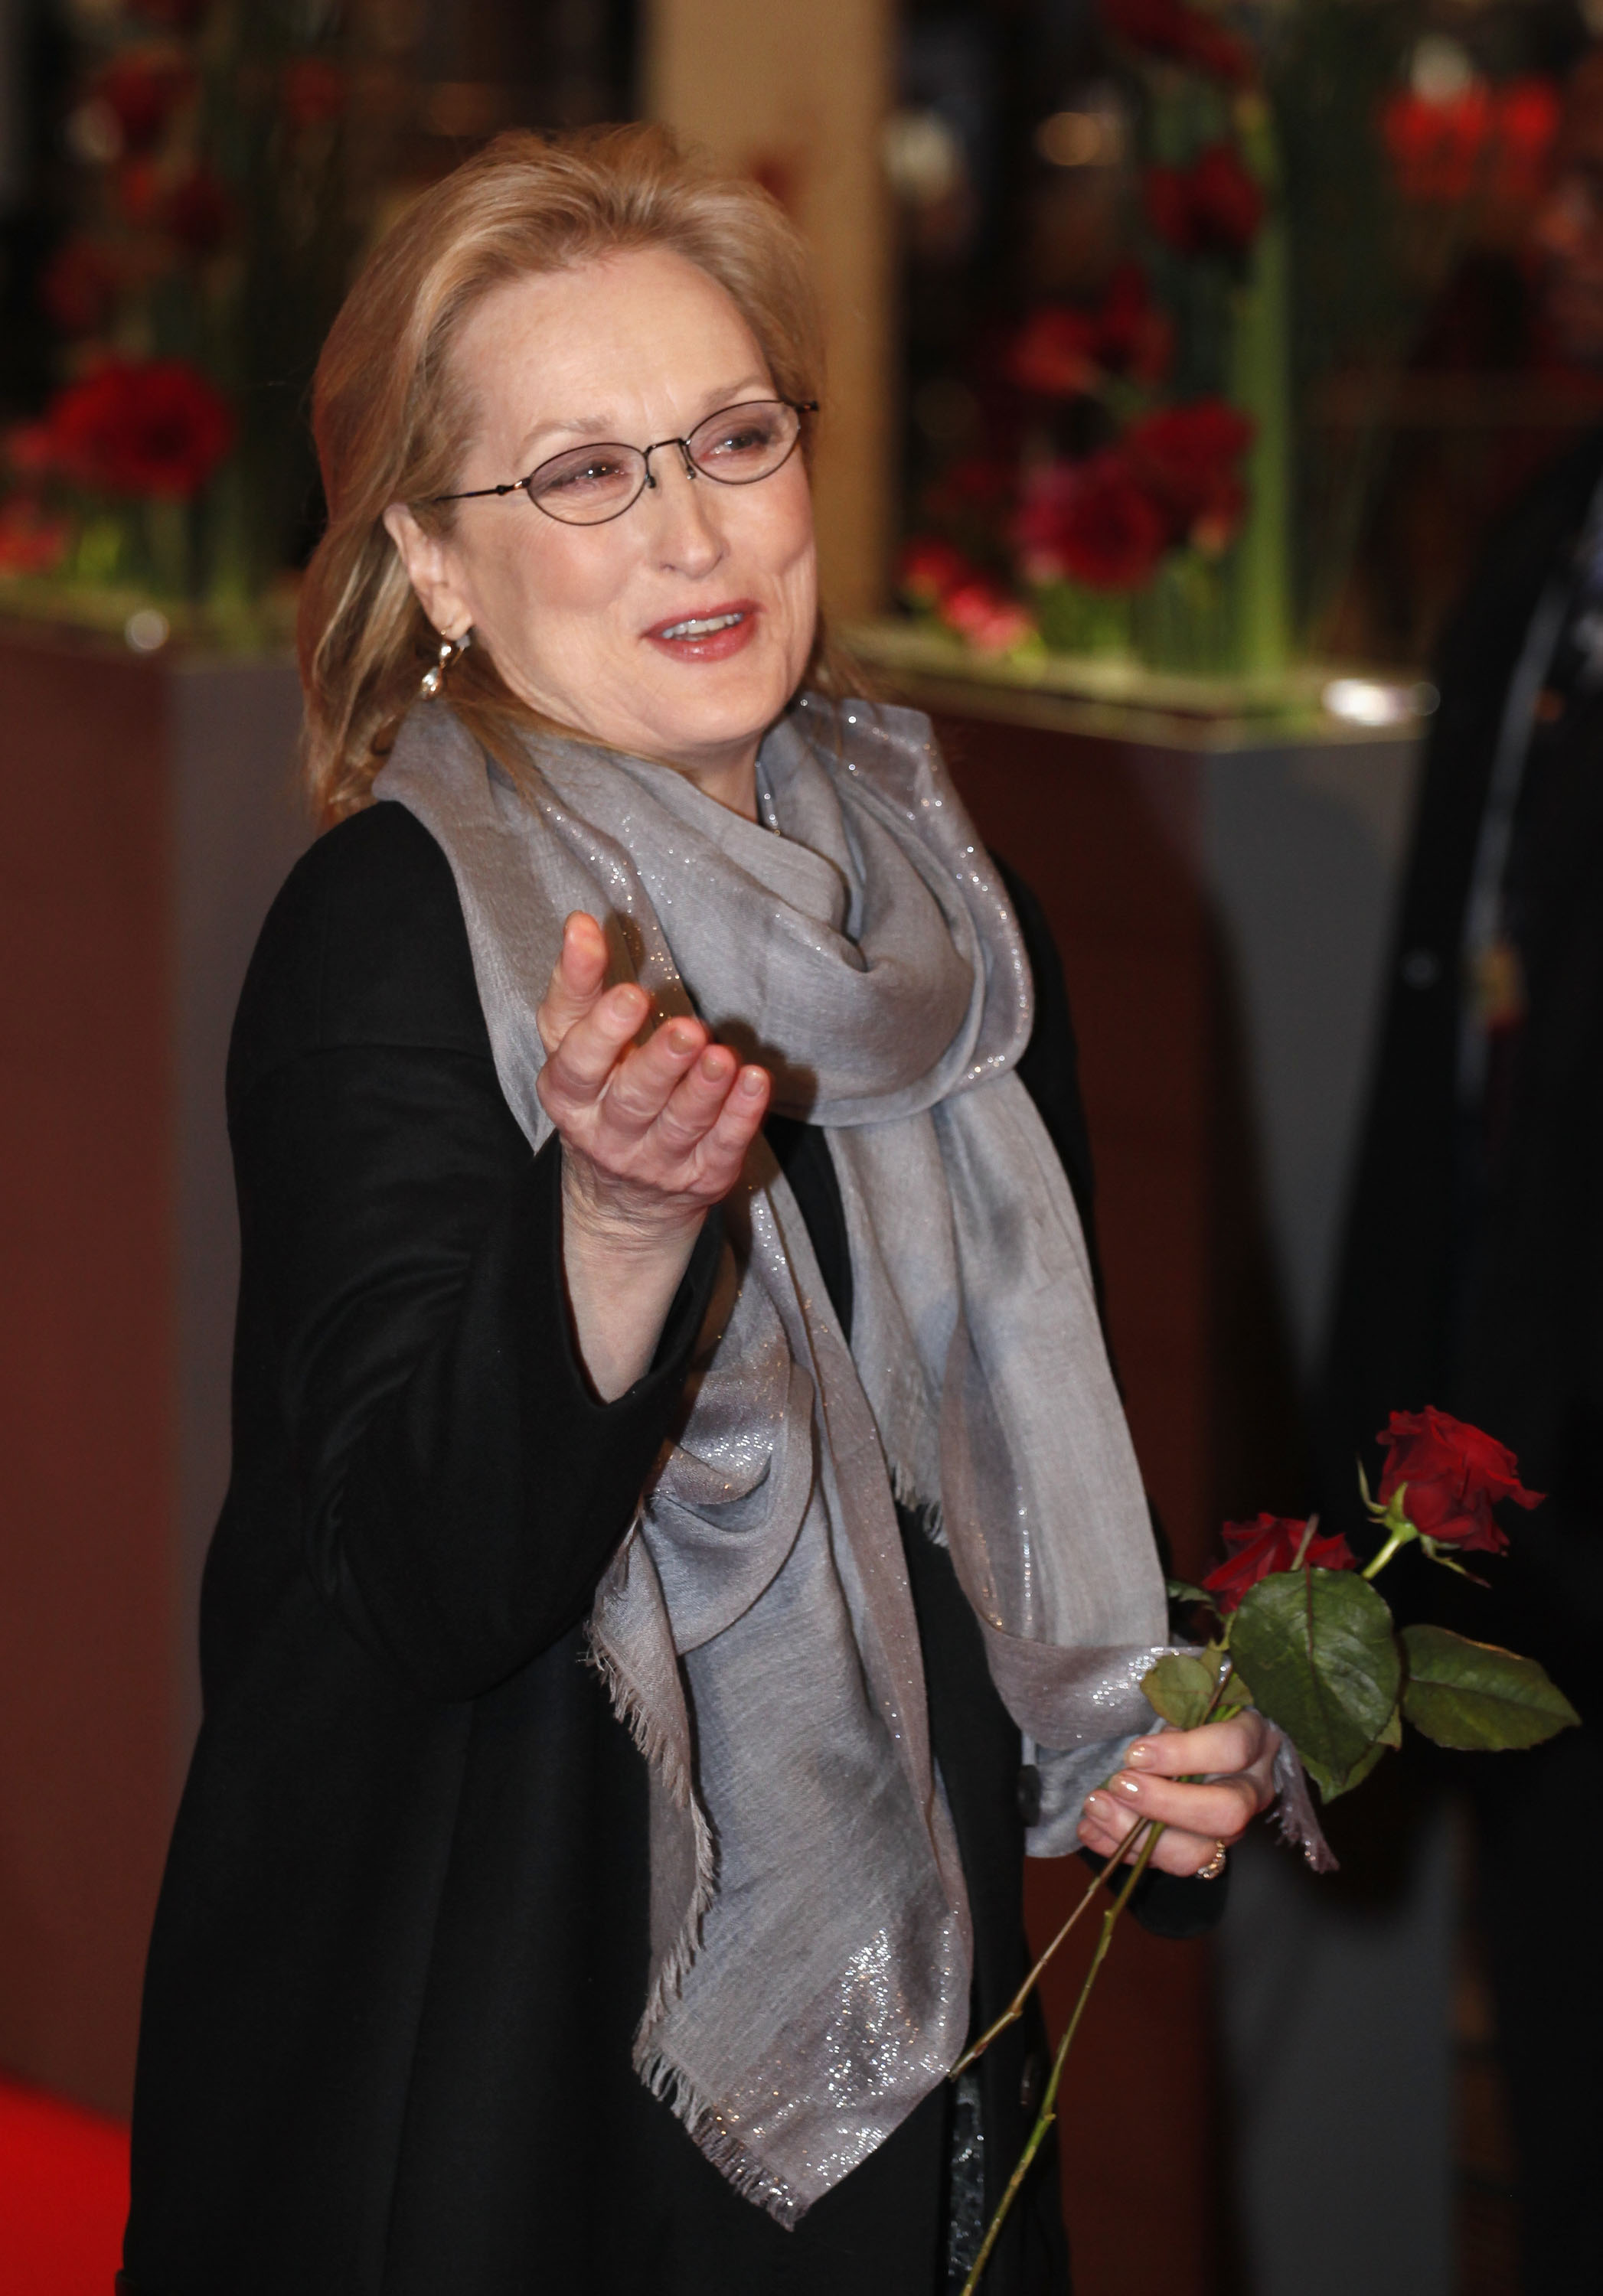 Meryl Streep bei der Premiere von "The Iron Lady" während des sechsten Tages der 62. Internationalen Filmfestspiele Berlin im Berlinale Palast am 14. Februar 2012 in Berlin, Deutschland | Quelle: Getty Images